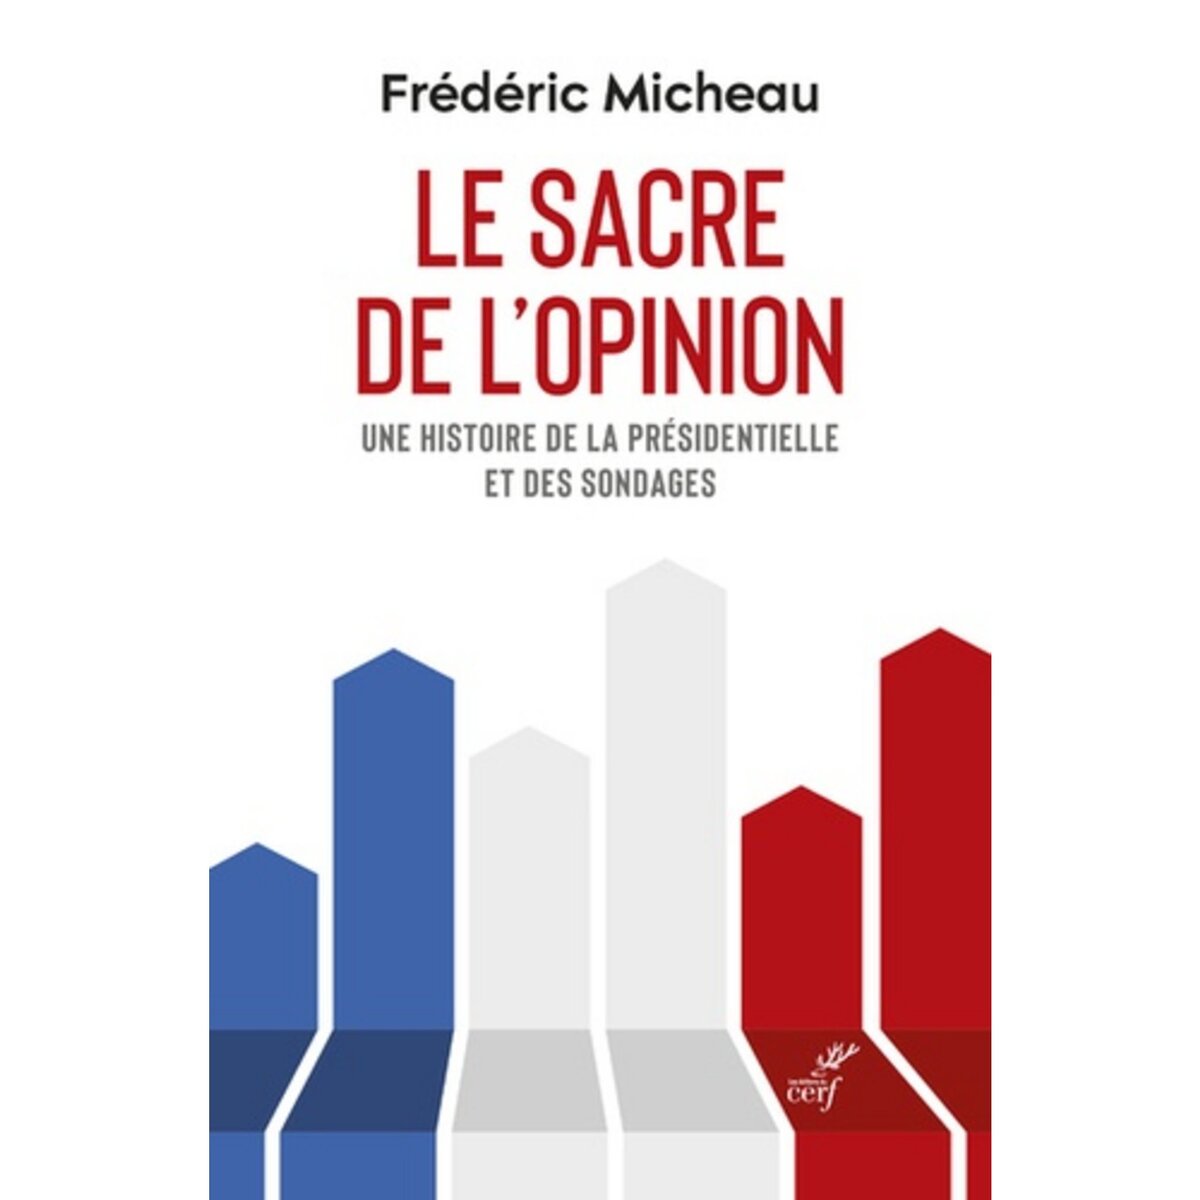  LE SACRE DE L'OPINION. UNE HISTOIRE DE LA PRESIDENTIELLE ET DES SONDAGES, Micheau Frédéric